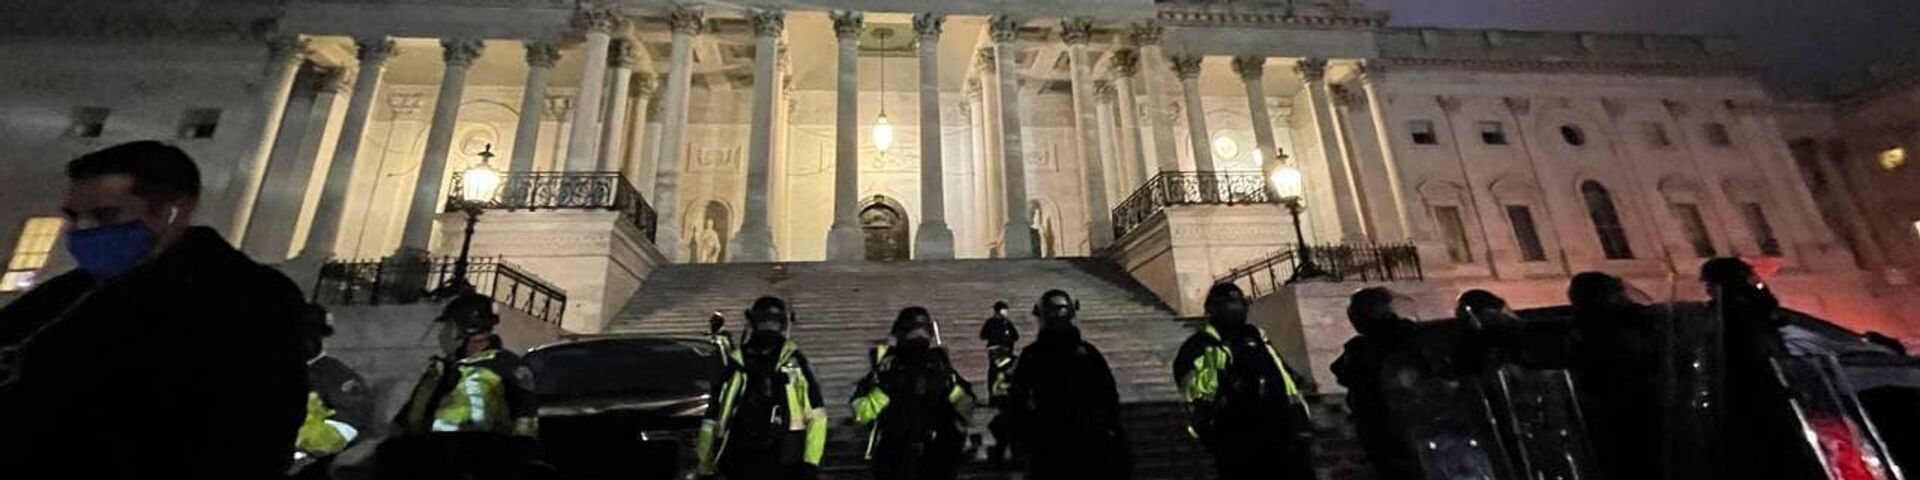 Полиция у здания Капитолия в Вашингтоне - РИА Новости, 1920, 06.01.2021